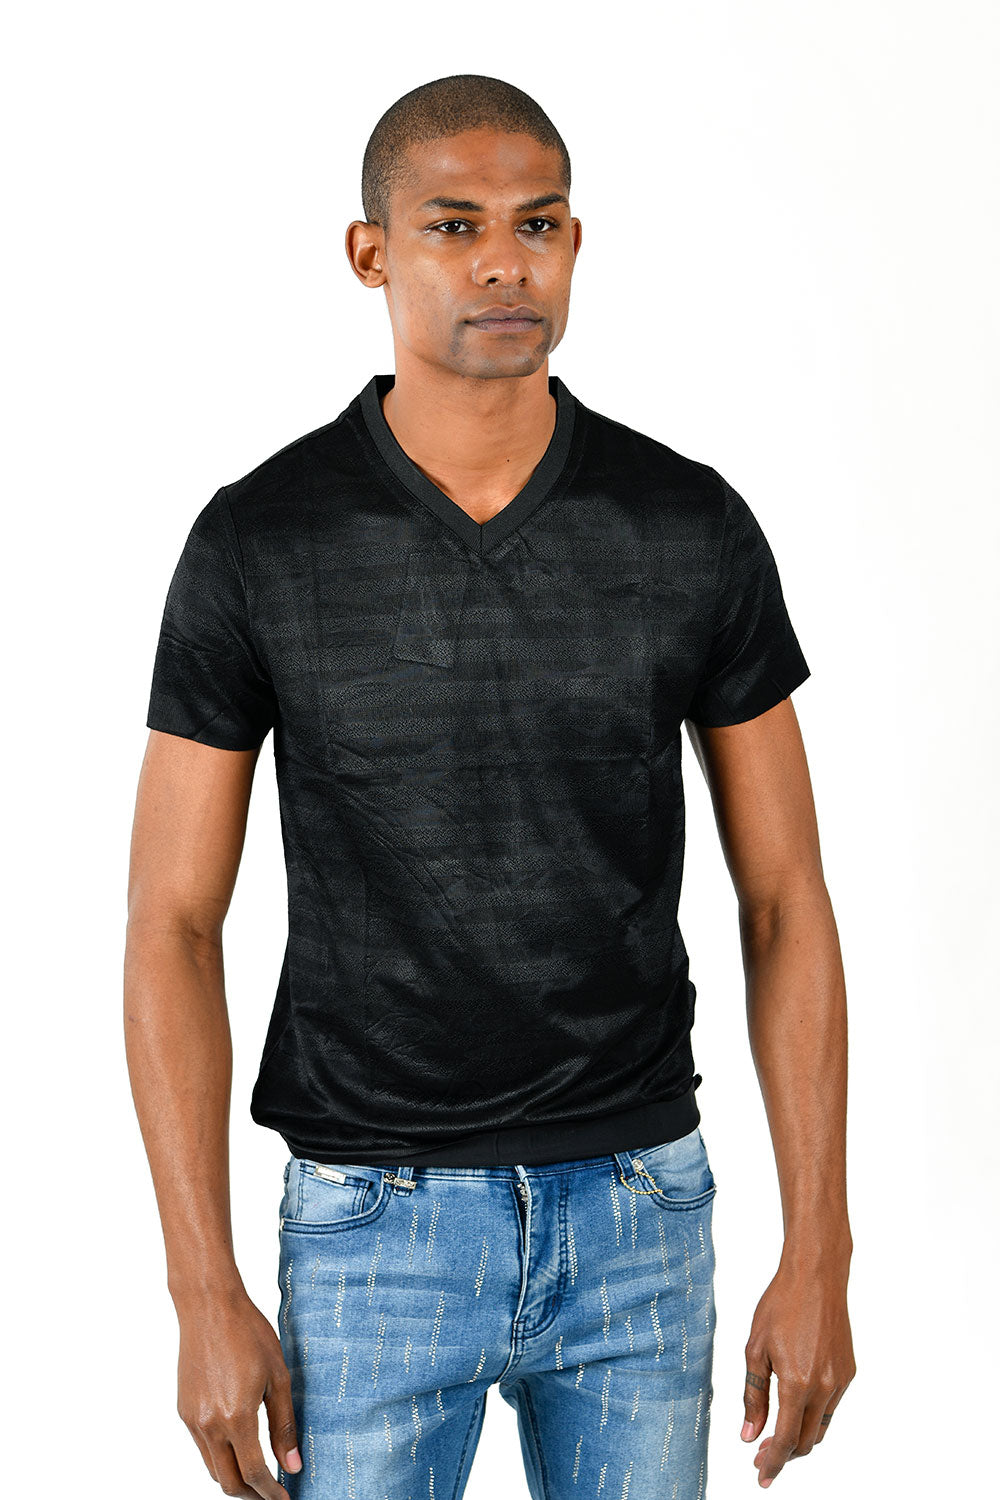 Barabas Men's Solid Color Black Graphic Tee V-Neck T-Shirts TV213